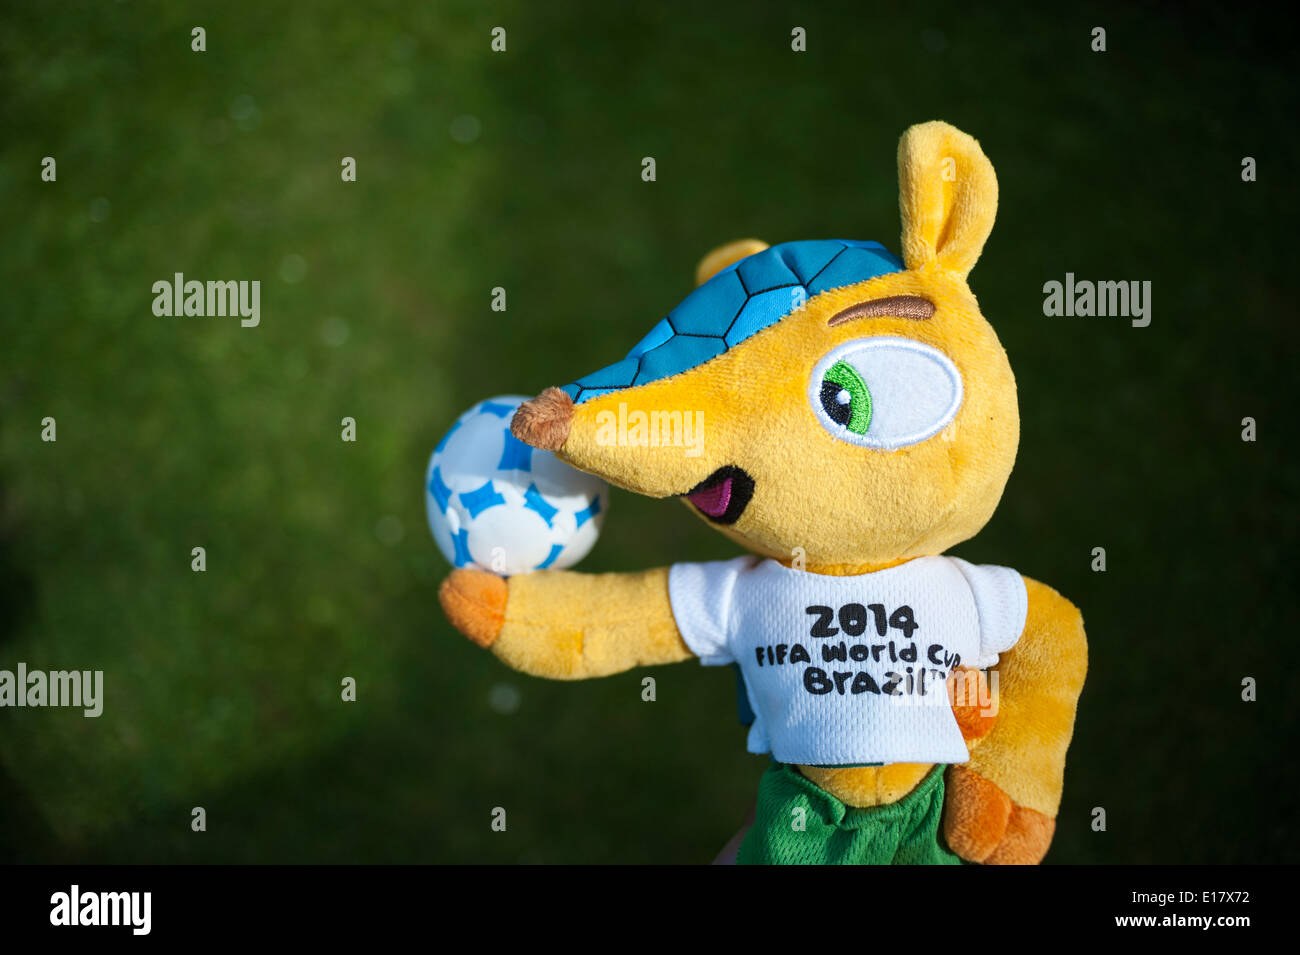 'Fuleco the Armadillo' Mascot for Brazil World Cup 2014. Stock Photo